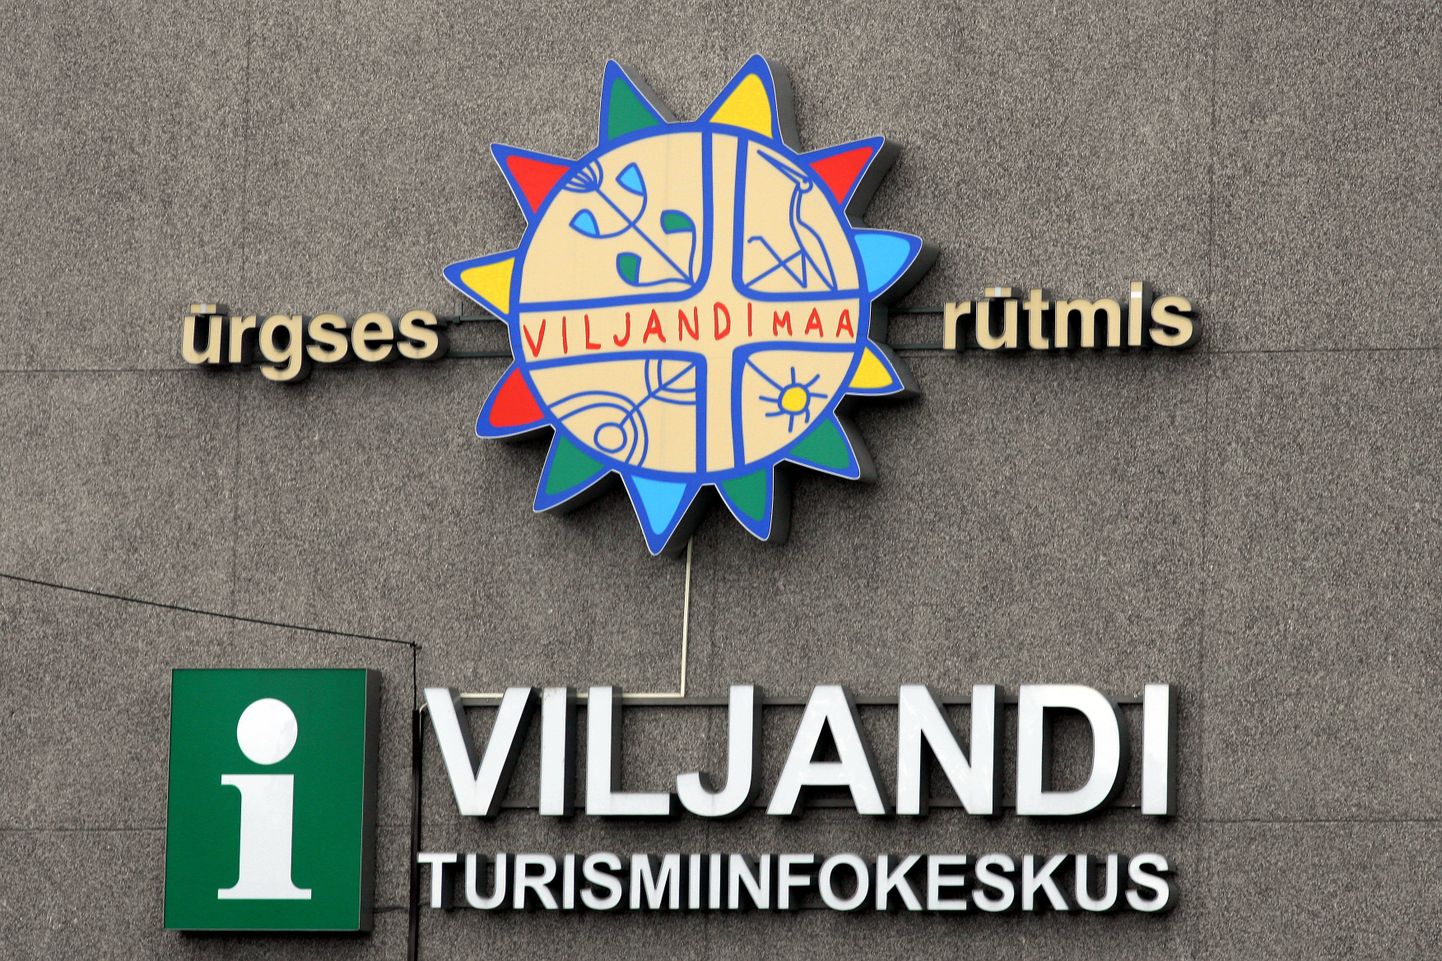 Kaubamärk "Ürgses Viljandimaa rütmis" on patendiametis registreeritud maavalitsusele 2006. aastast ning patent kestab 2026. aastani.